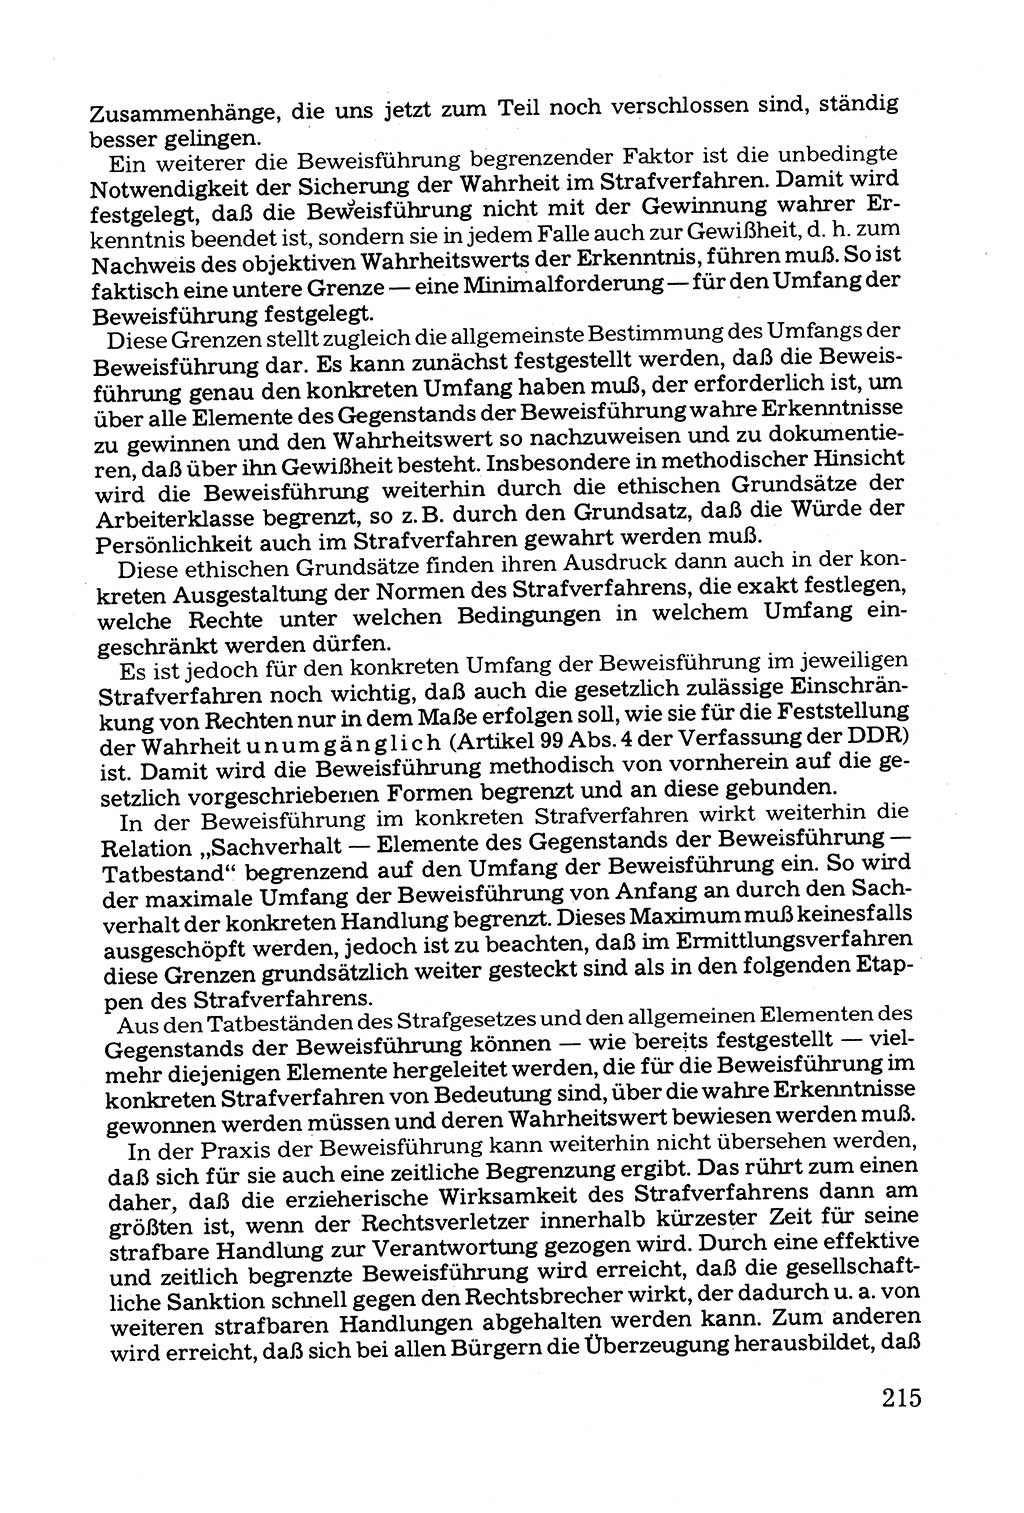 Grundfragen der Beweisführung im Ermittlungsverfahren [Deutsche Demokratische Republik (DDR)] 1980, Seite 215 (Bws.-Fhrg. EV DDR 1980, S. 215)